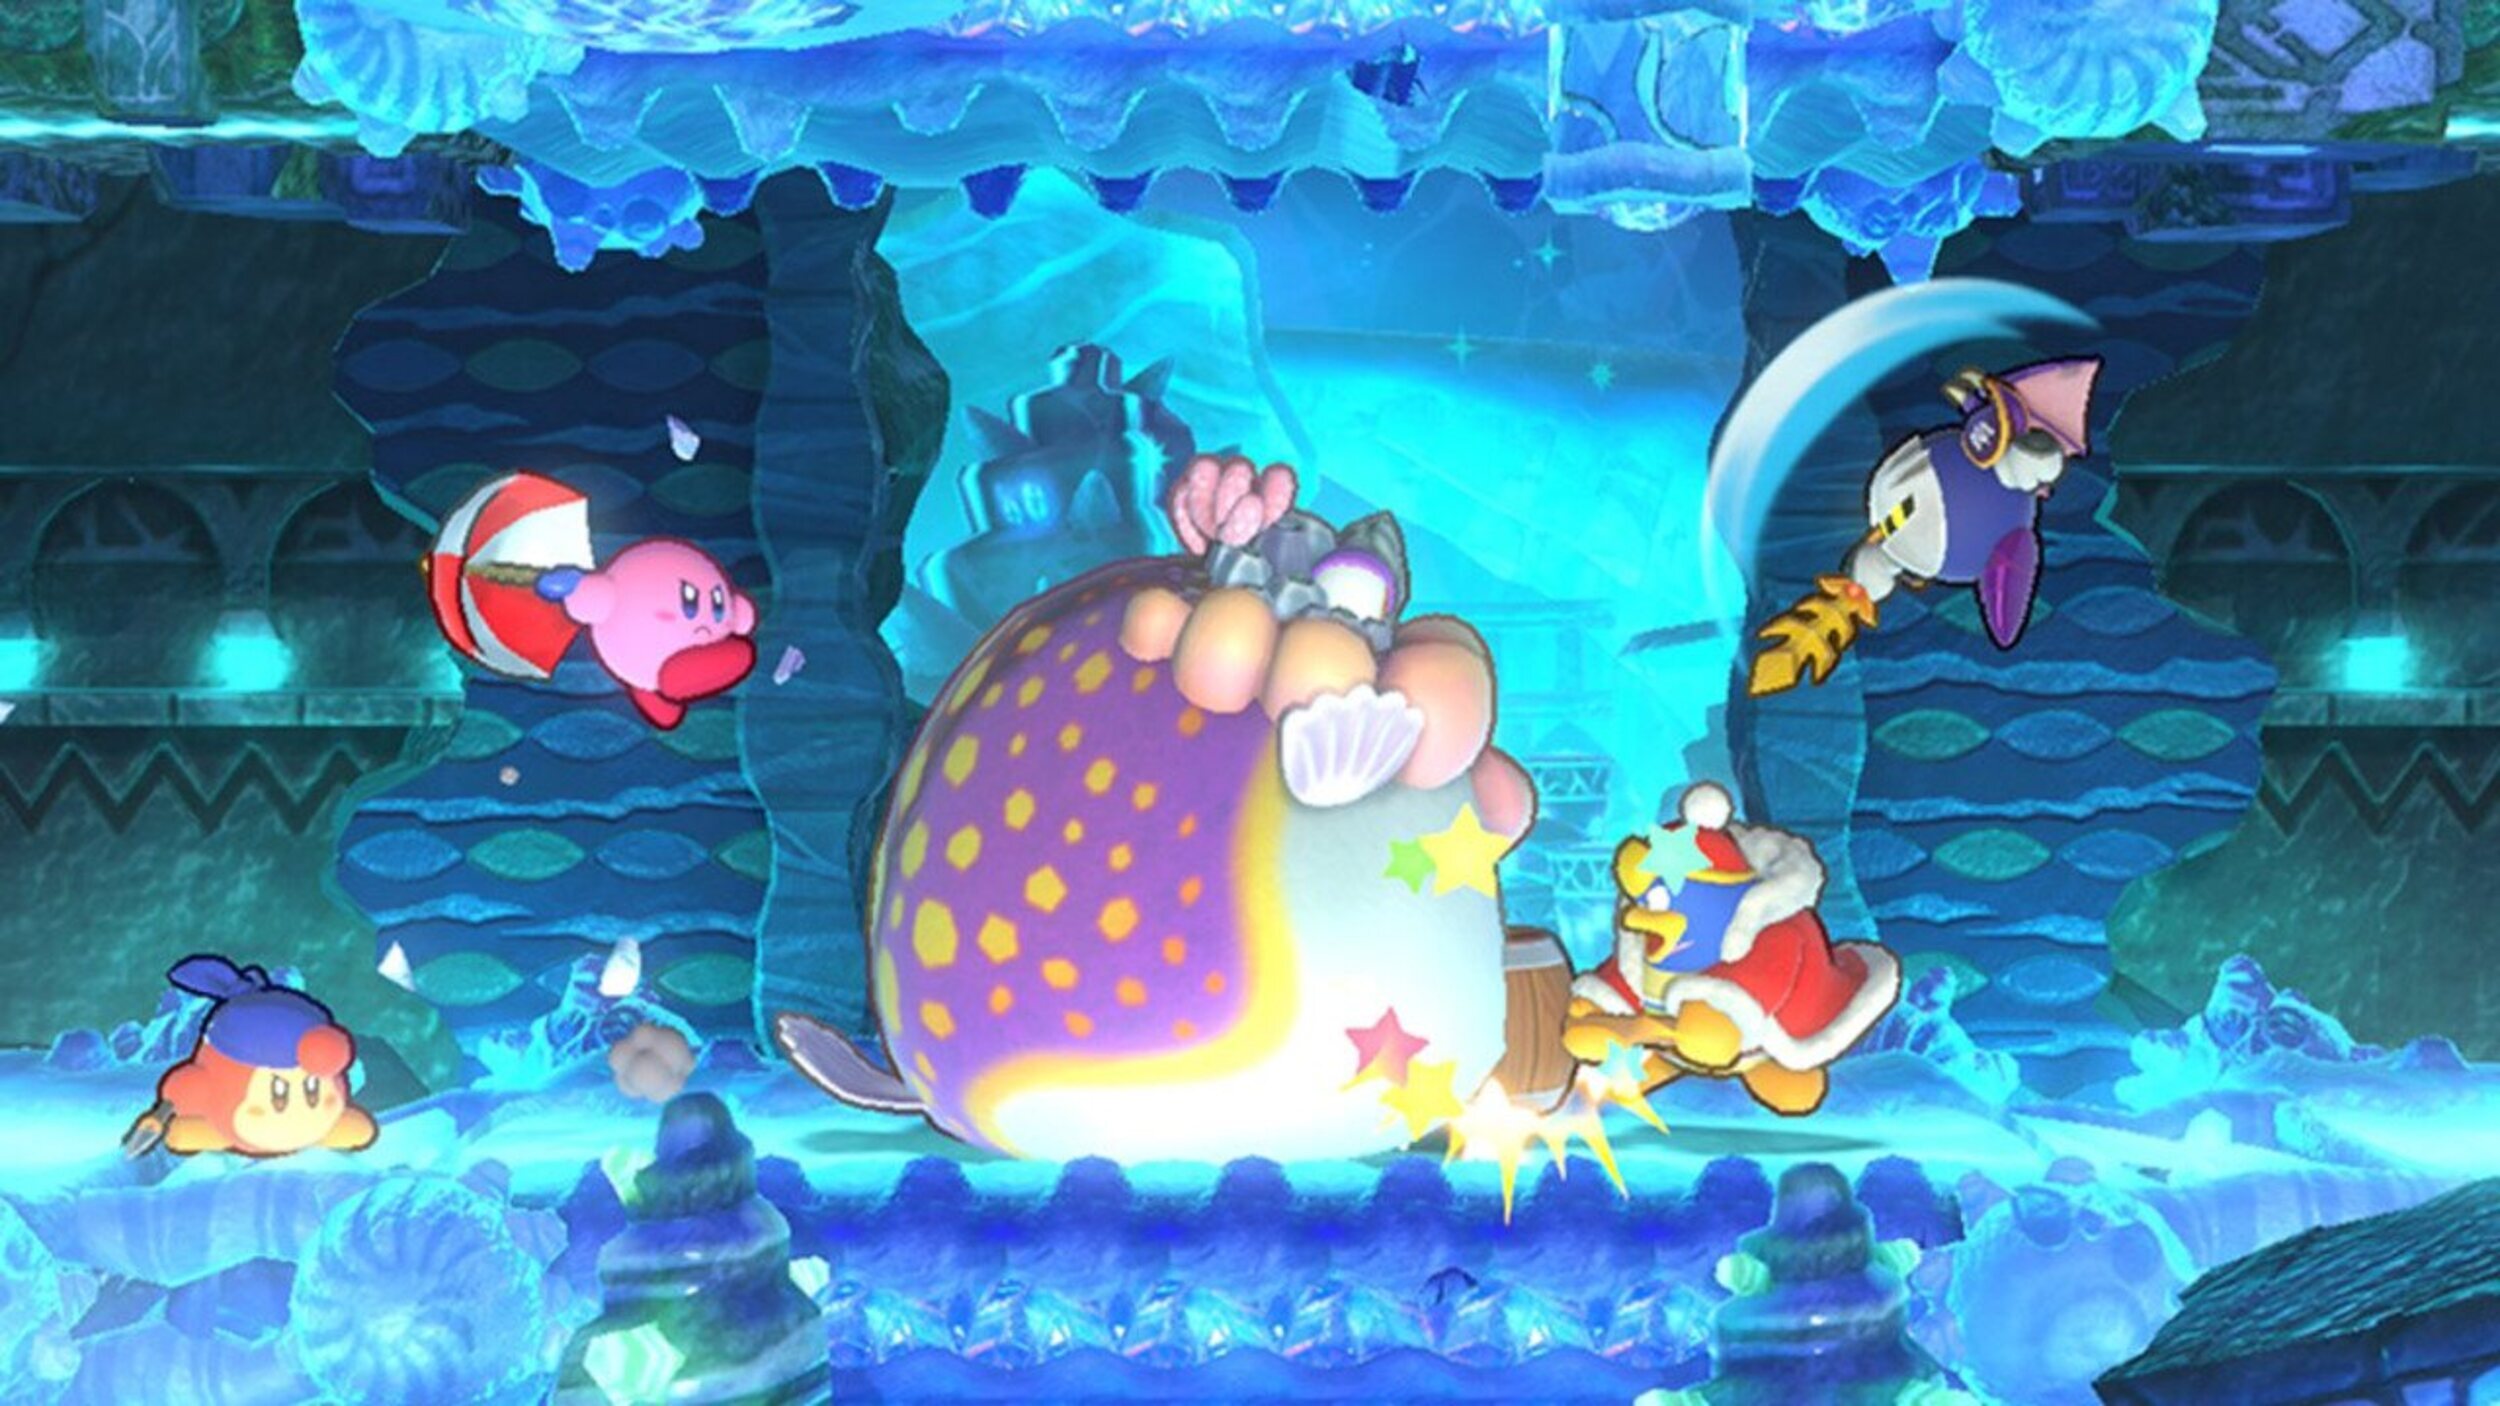 'Kirby's Return to Dream Land Deluxe' - Los jefes tienen patrones muy definidos